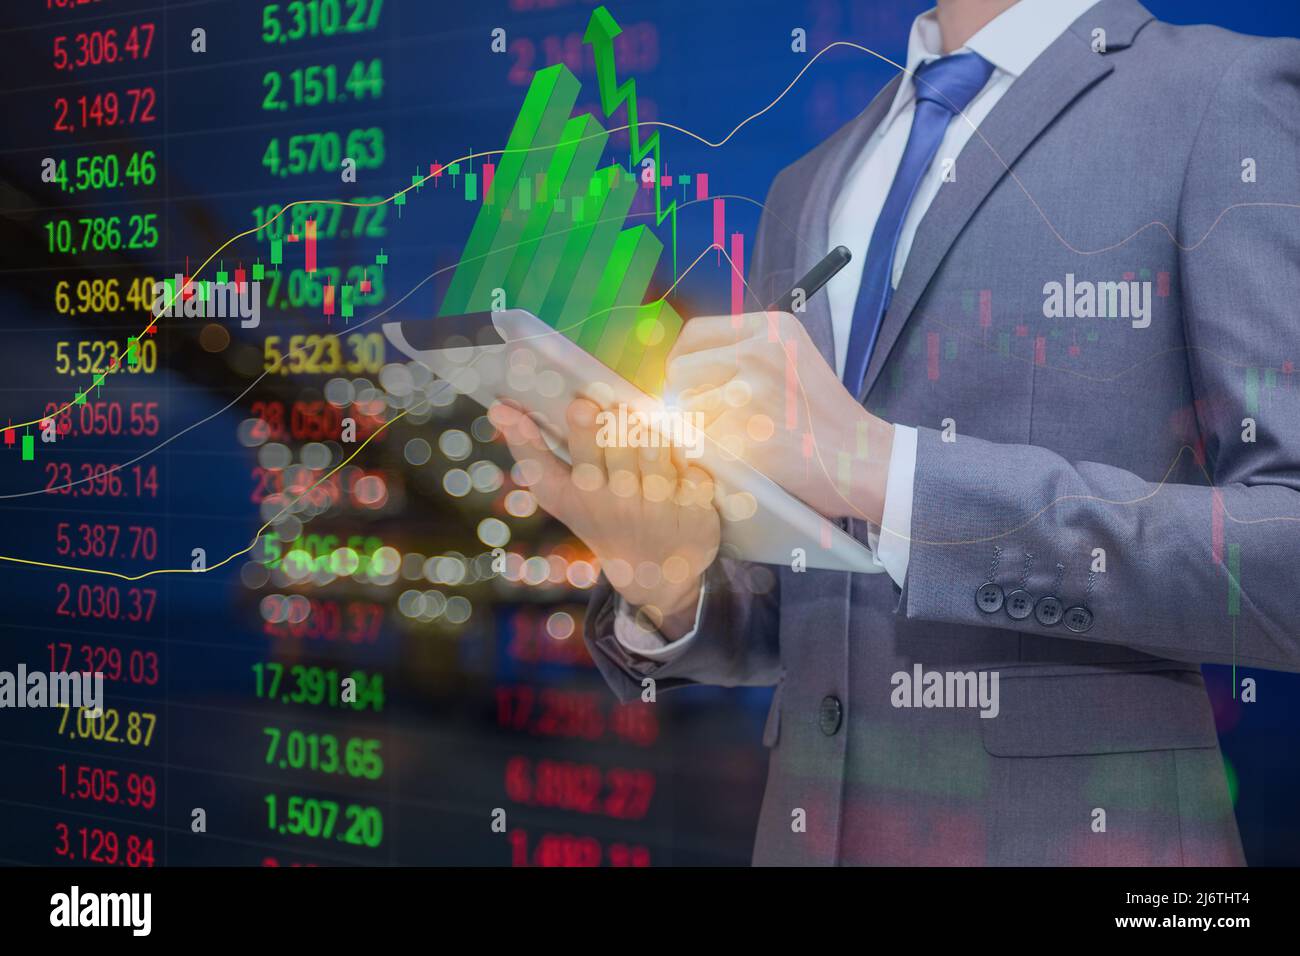 Homme d'affaires tenant une tablette avec un graphique à bâton vert sur le dessus et le fond est la plate-forme de traitement du pétrole et du gaz et le graphique d'indice de stock avec indicateur, le pétrole Banque D'Images